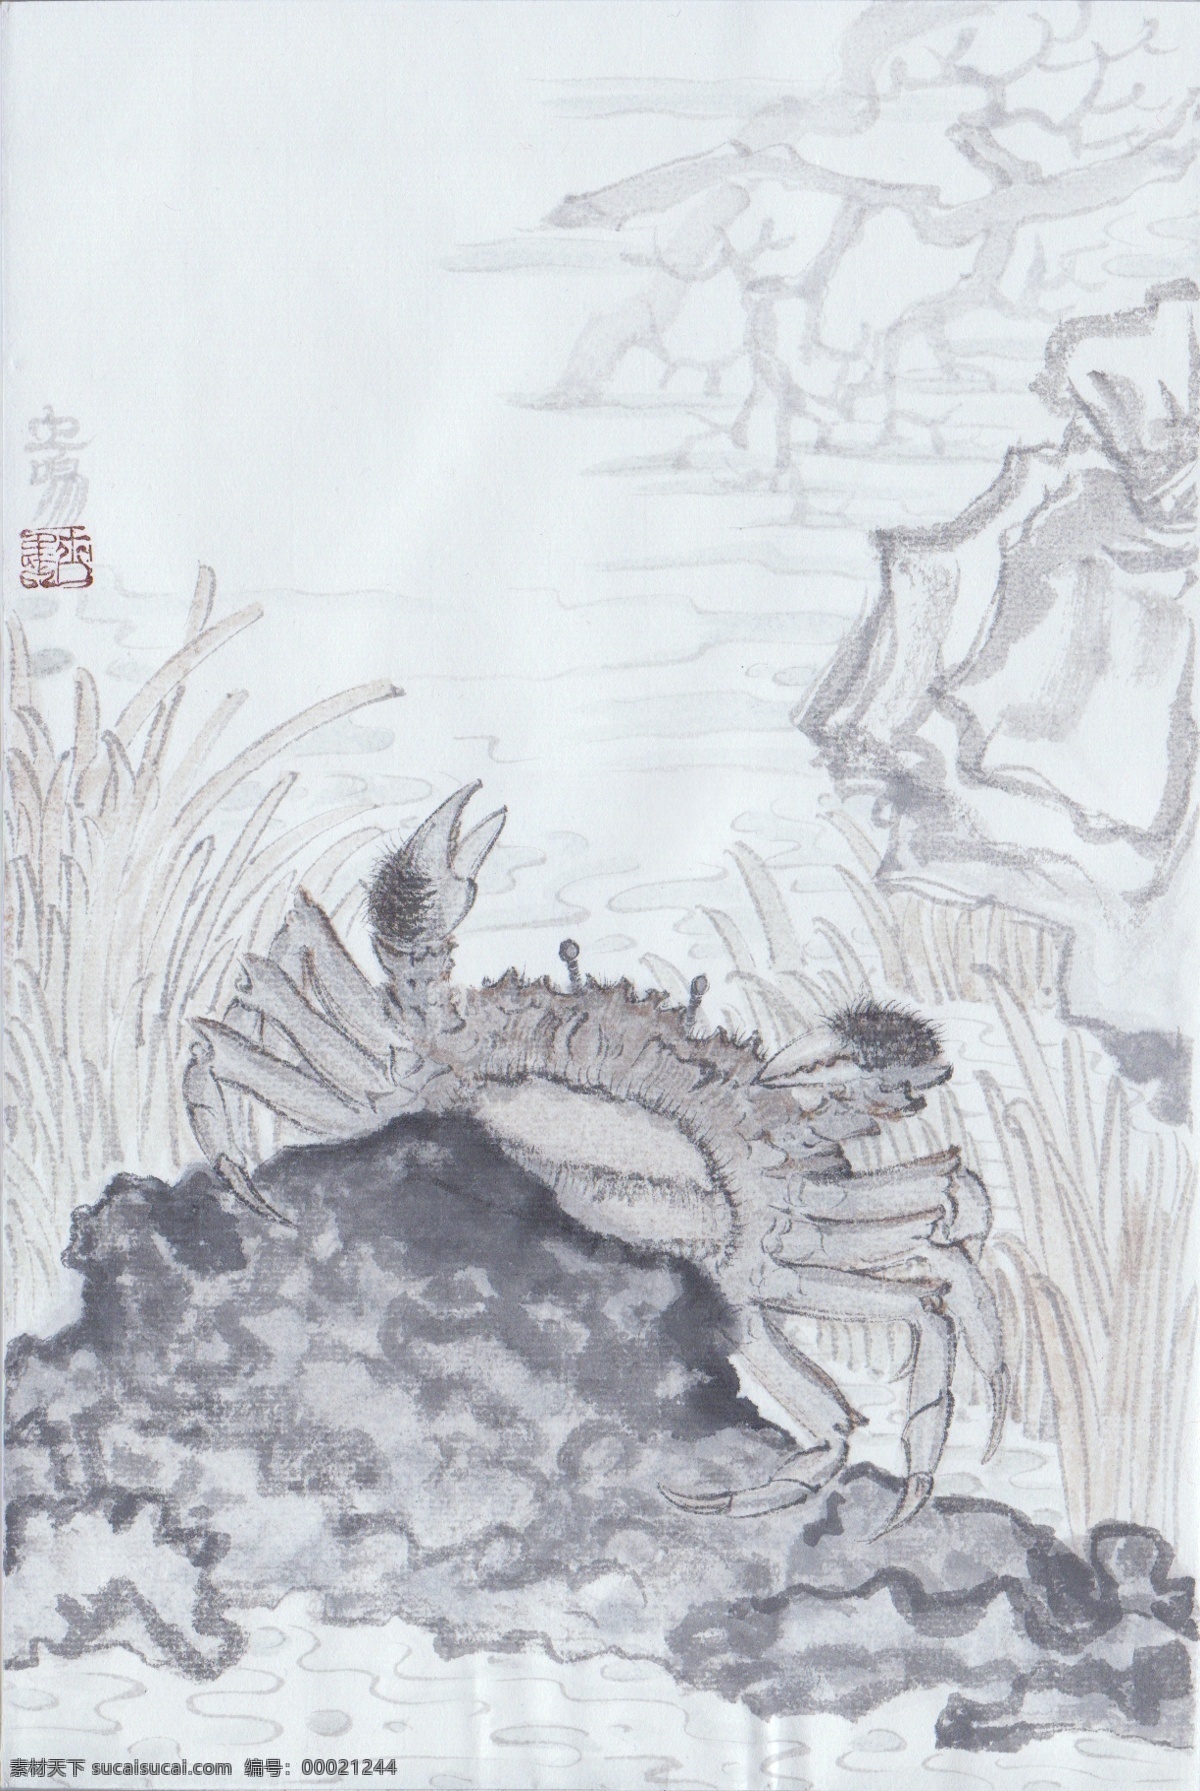 2010 年 尤 思 成 国画作品 动物画 中国画 设计素材 动物画篇 中国画篇 书画美术 白色